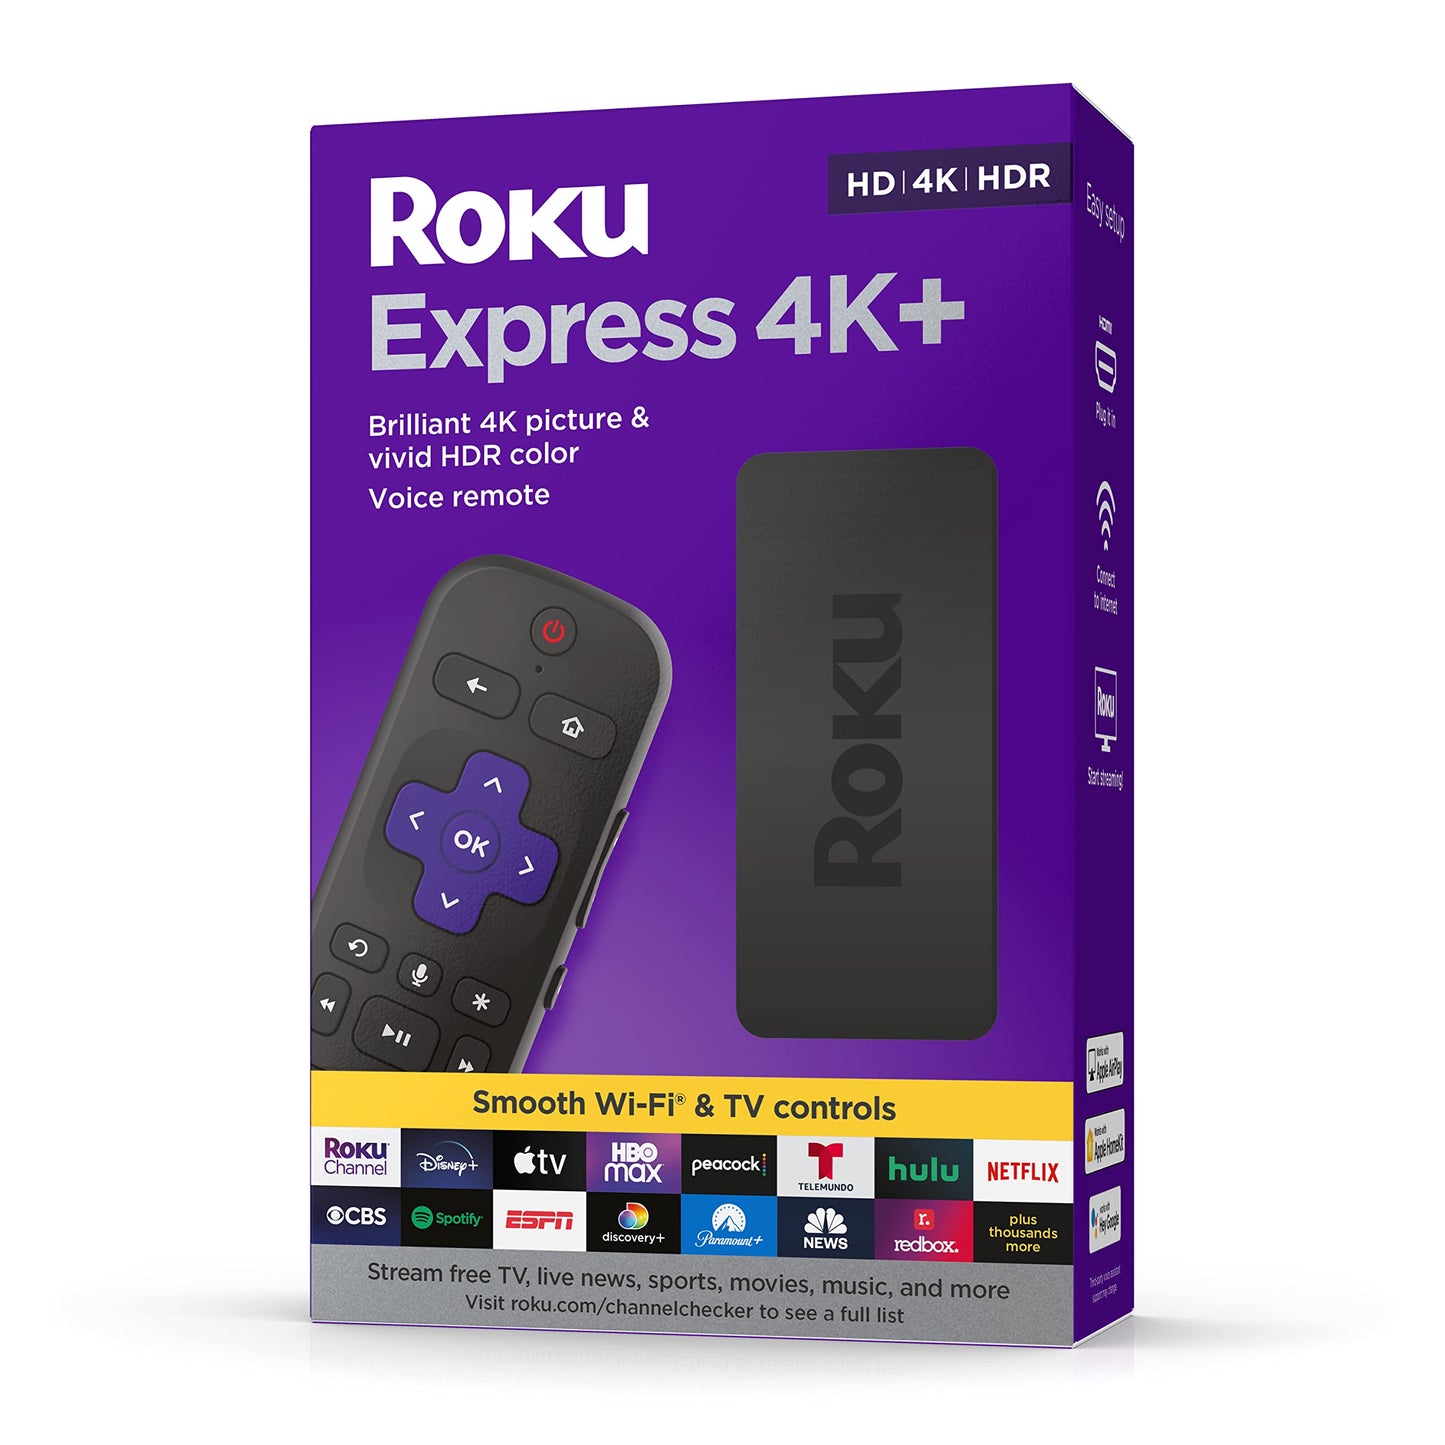 Roku Express 4K+ | Reproductor multimedia de transmisión HD/4K/HDR con transmisión inalámbrica suave y control remoto de voz Roku con controles de TV